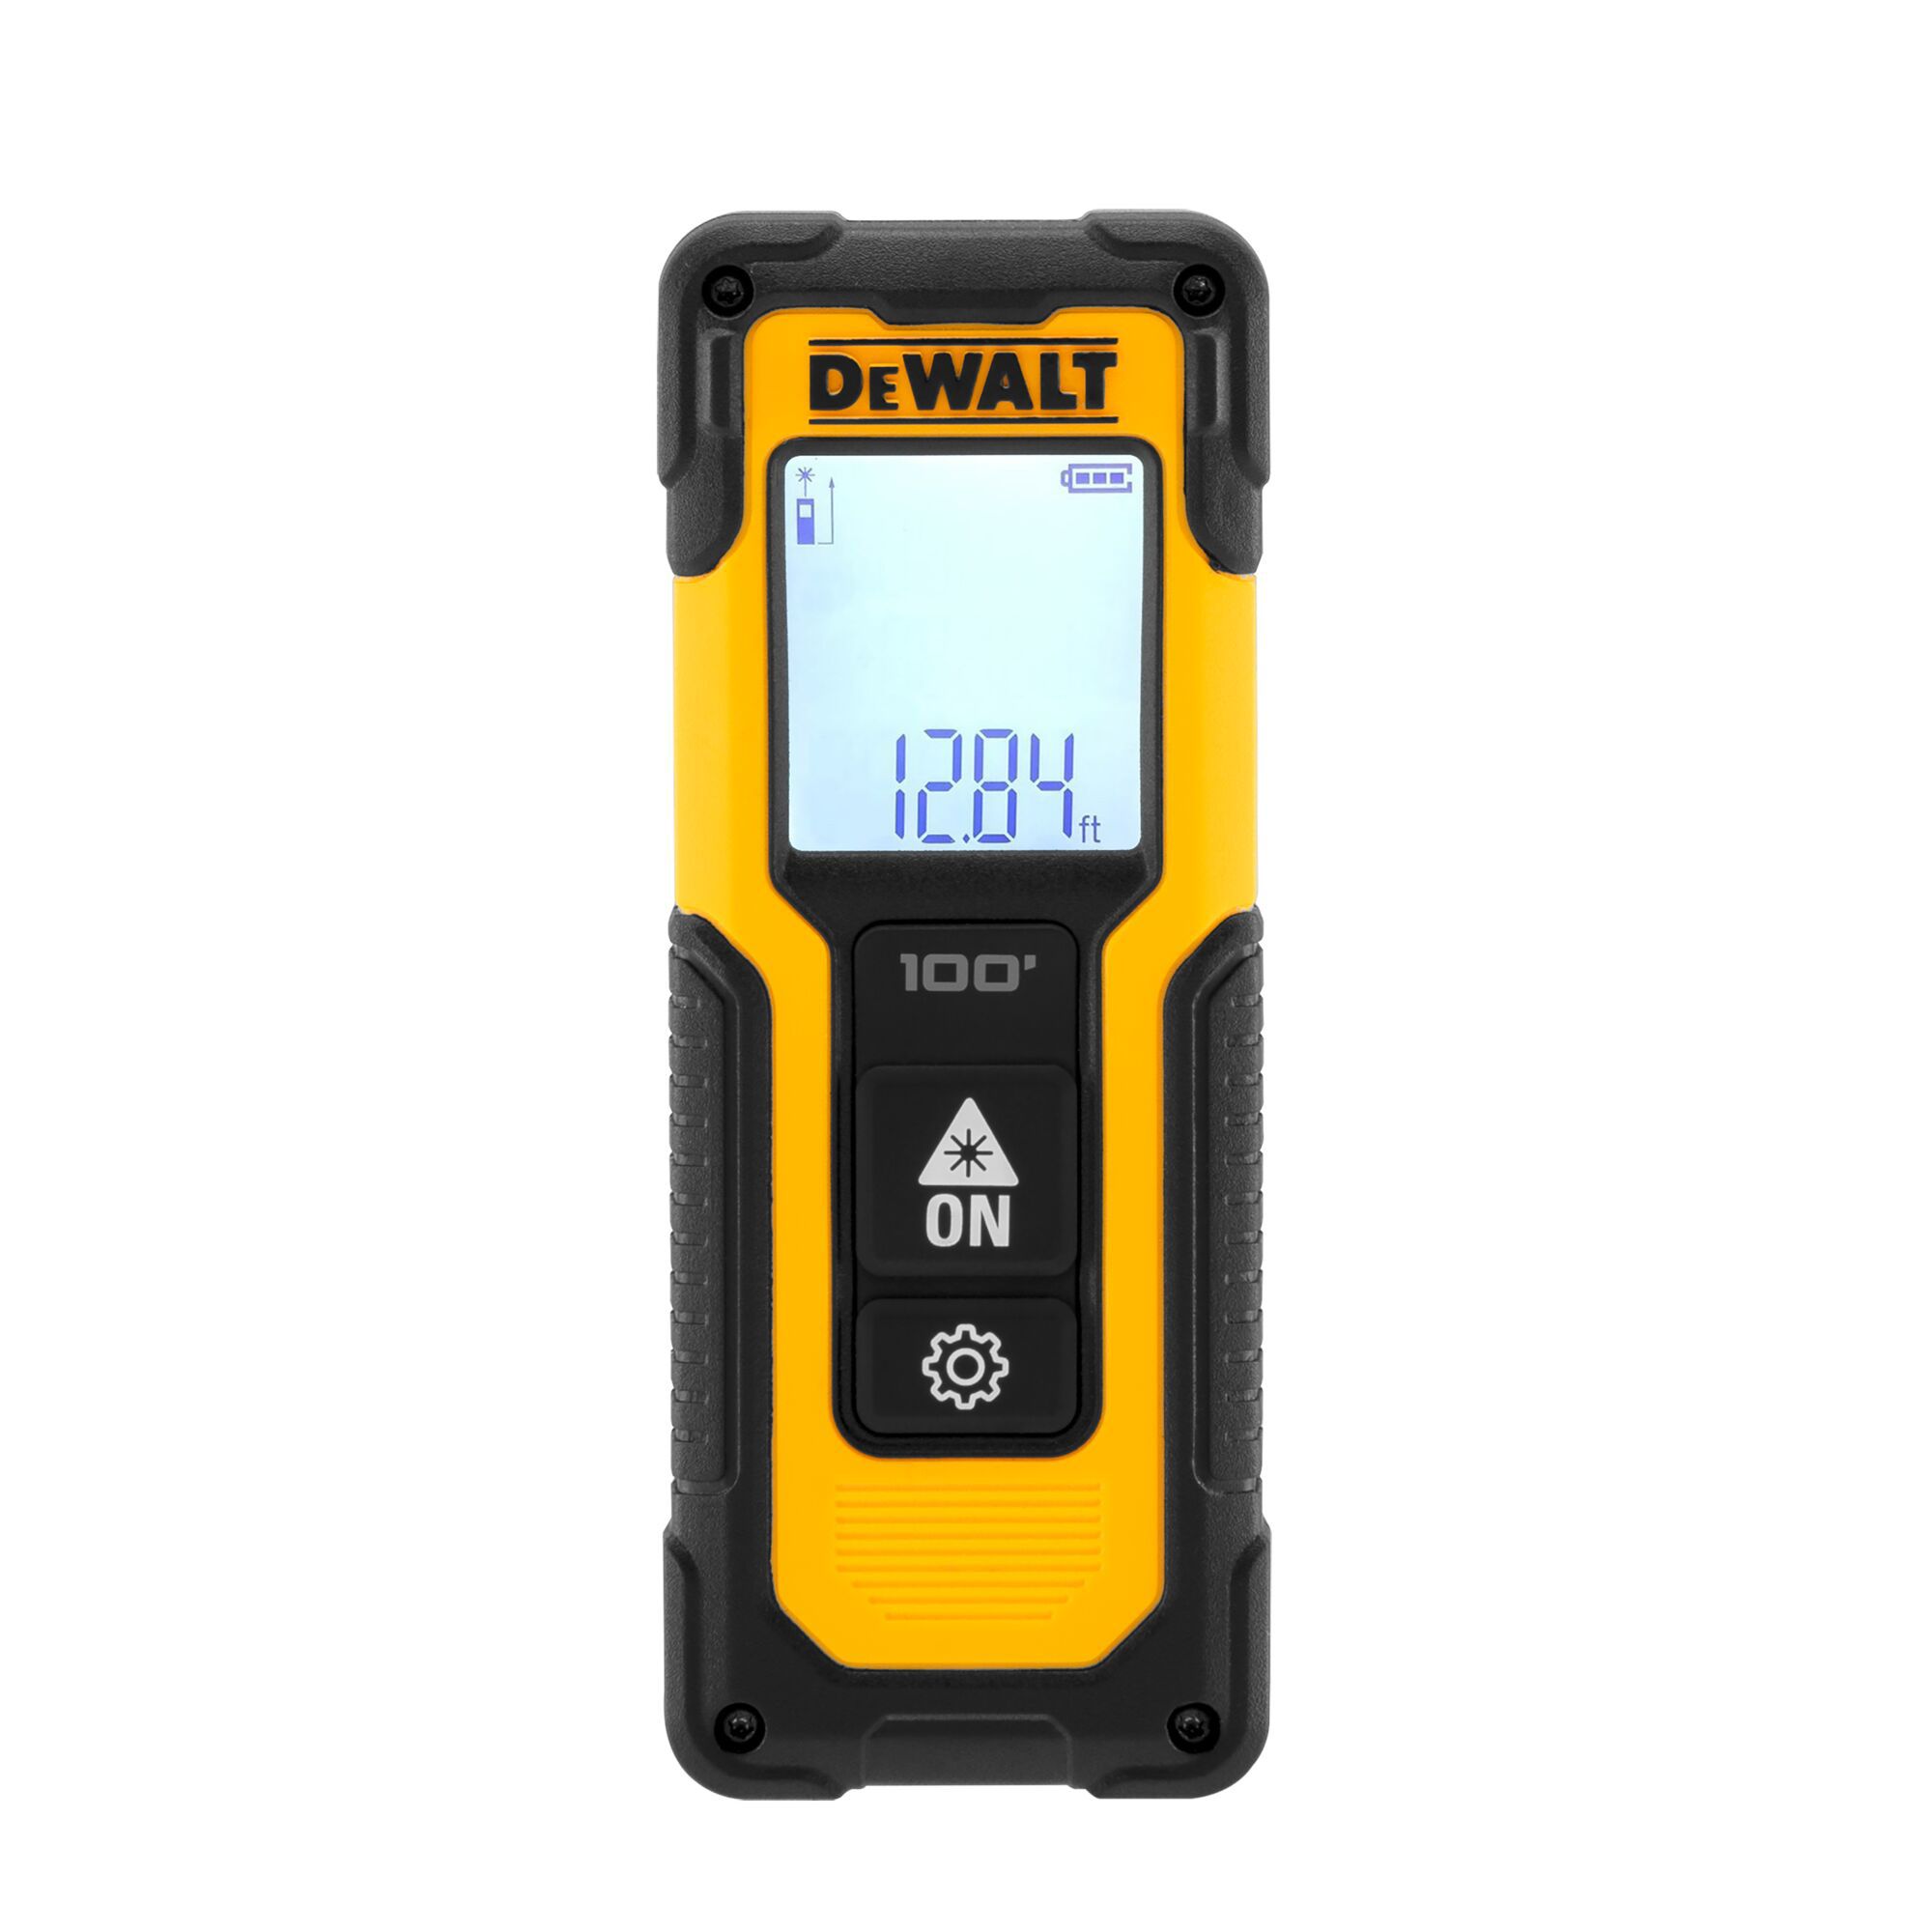 DeWalt Laser distance measurer